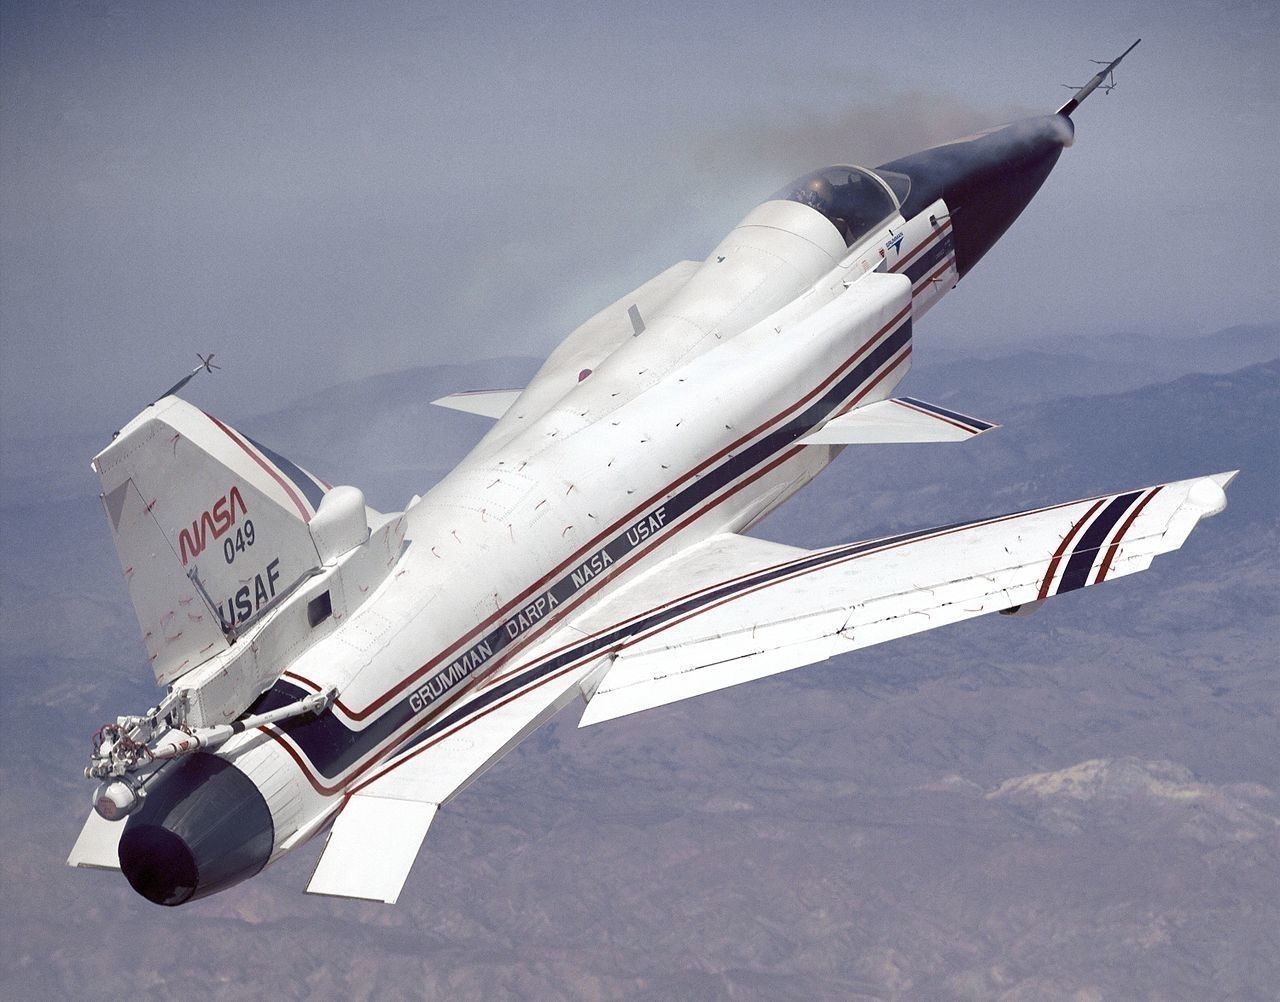 5. Grumman X-29 (1984)